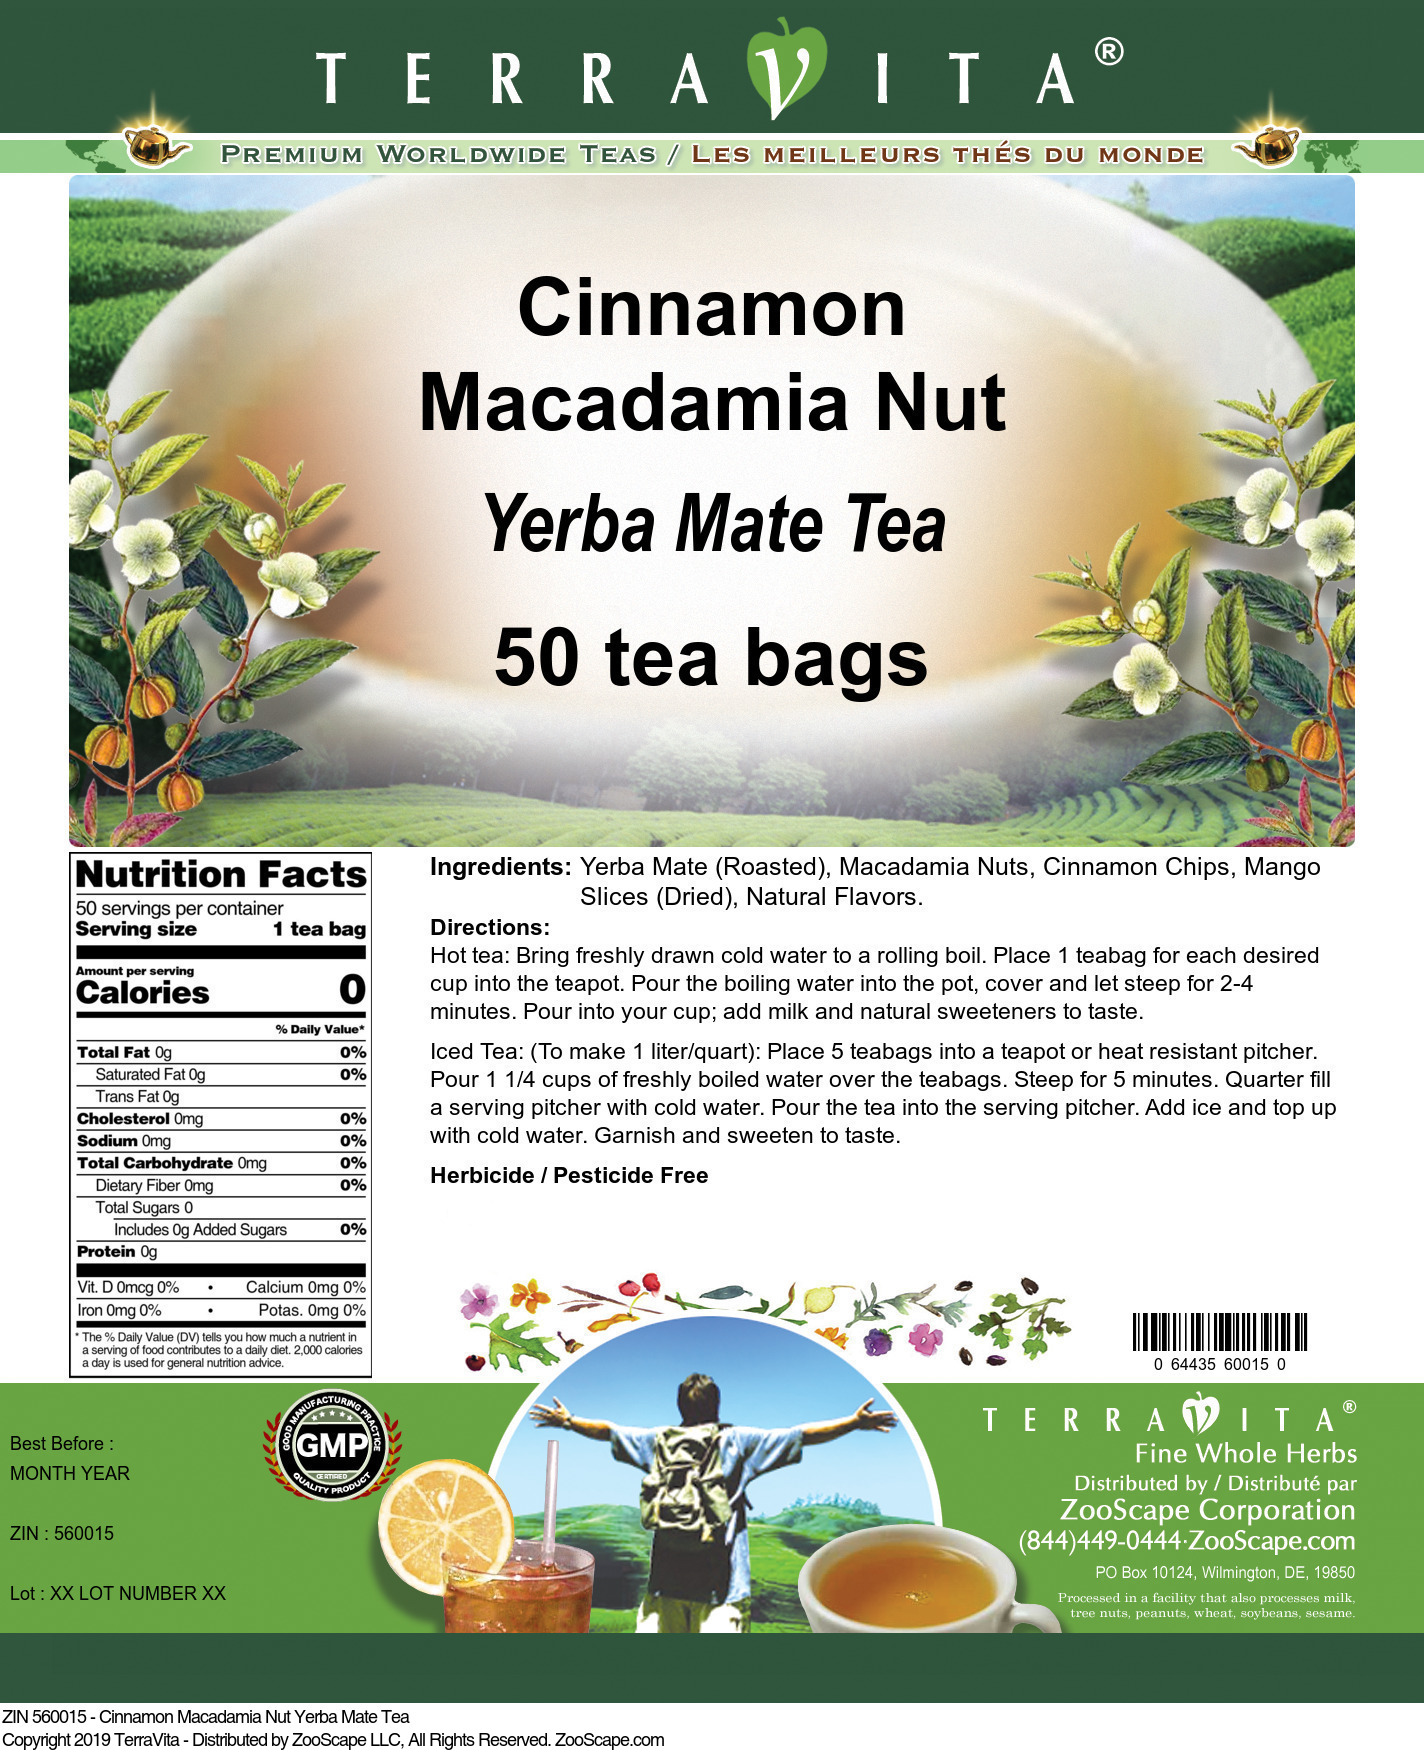 Cinnamon Macadamia Nut Yerba Mate Tea - Label